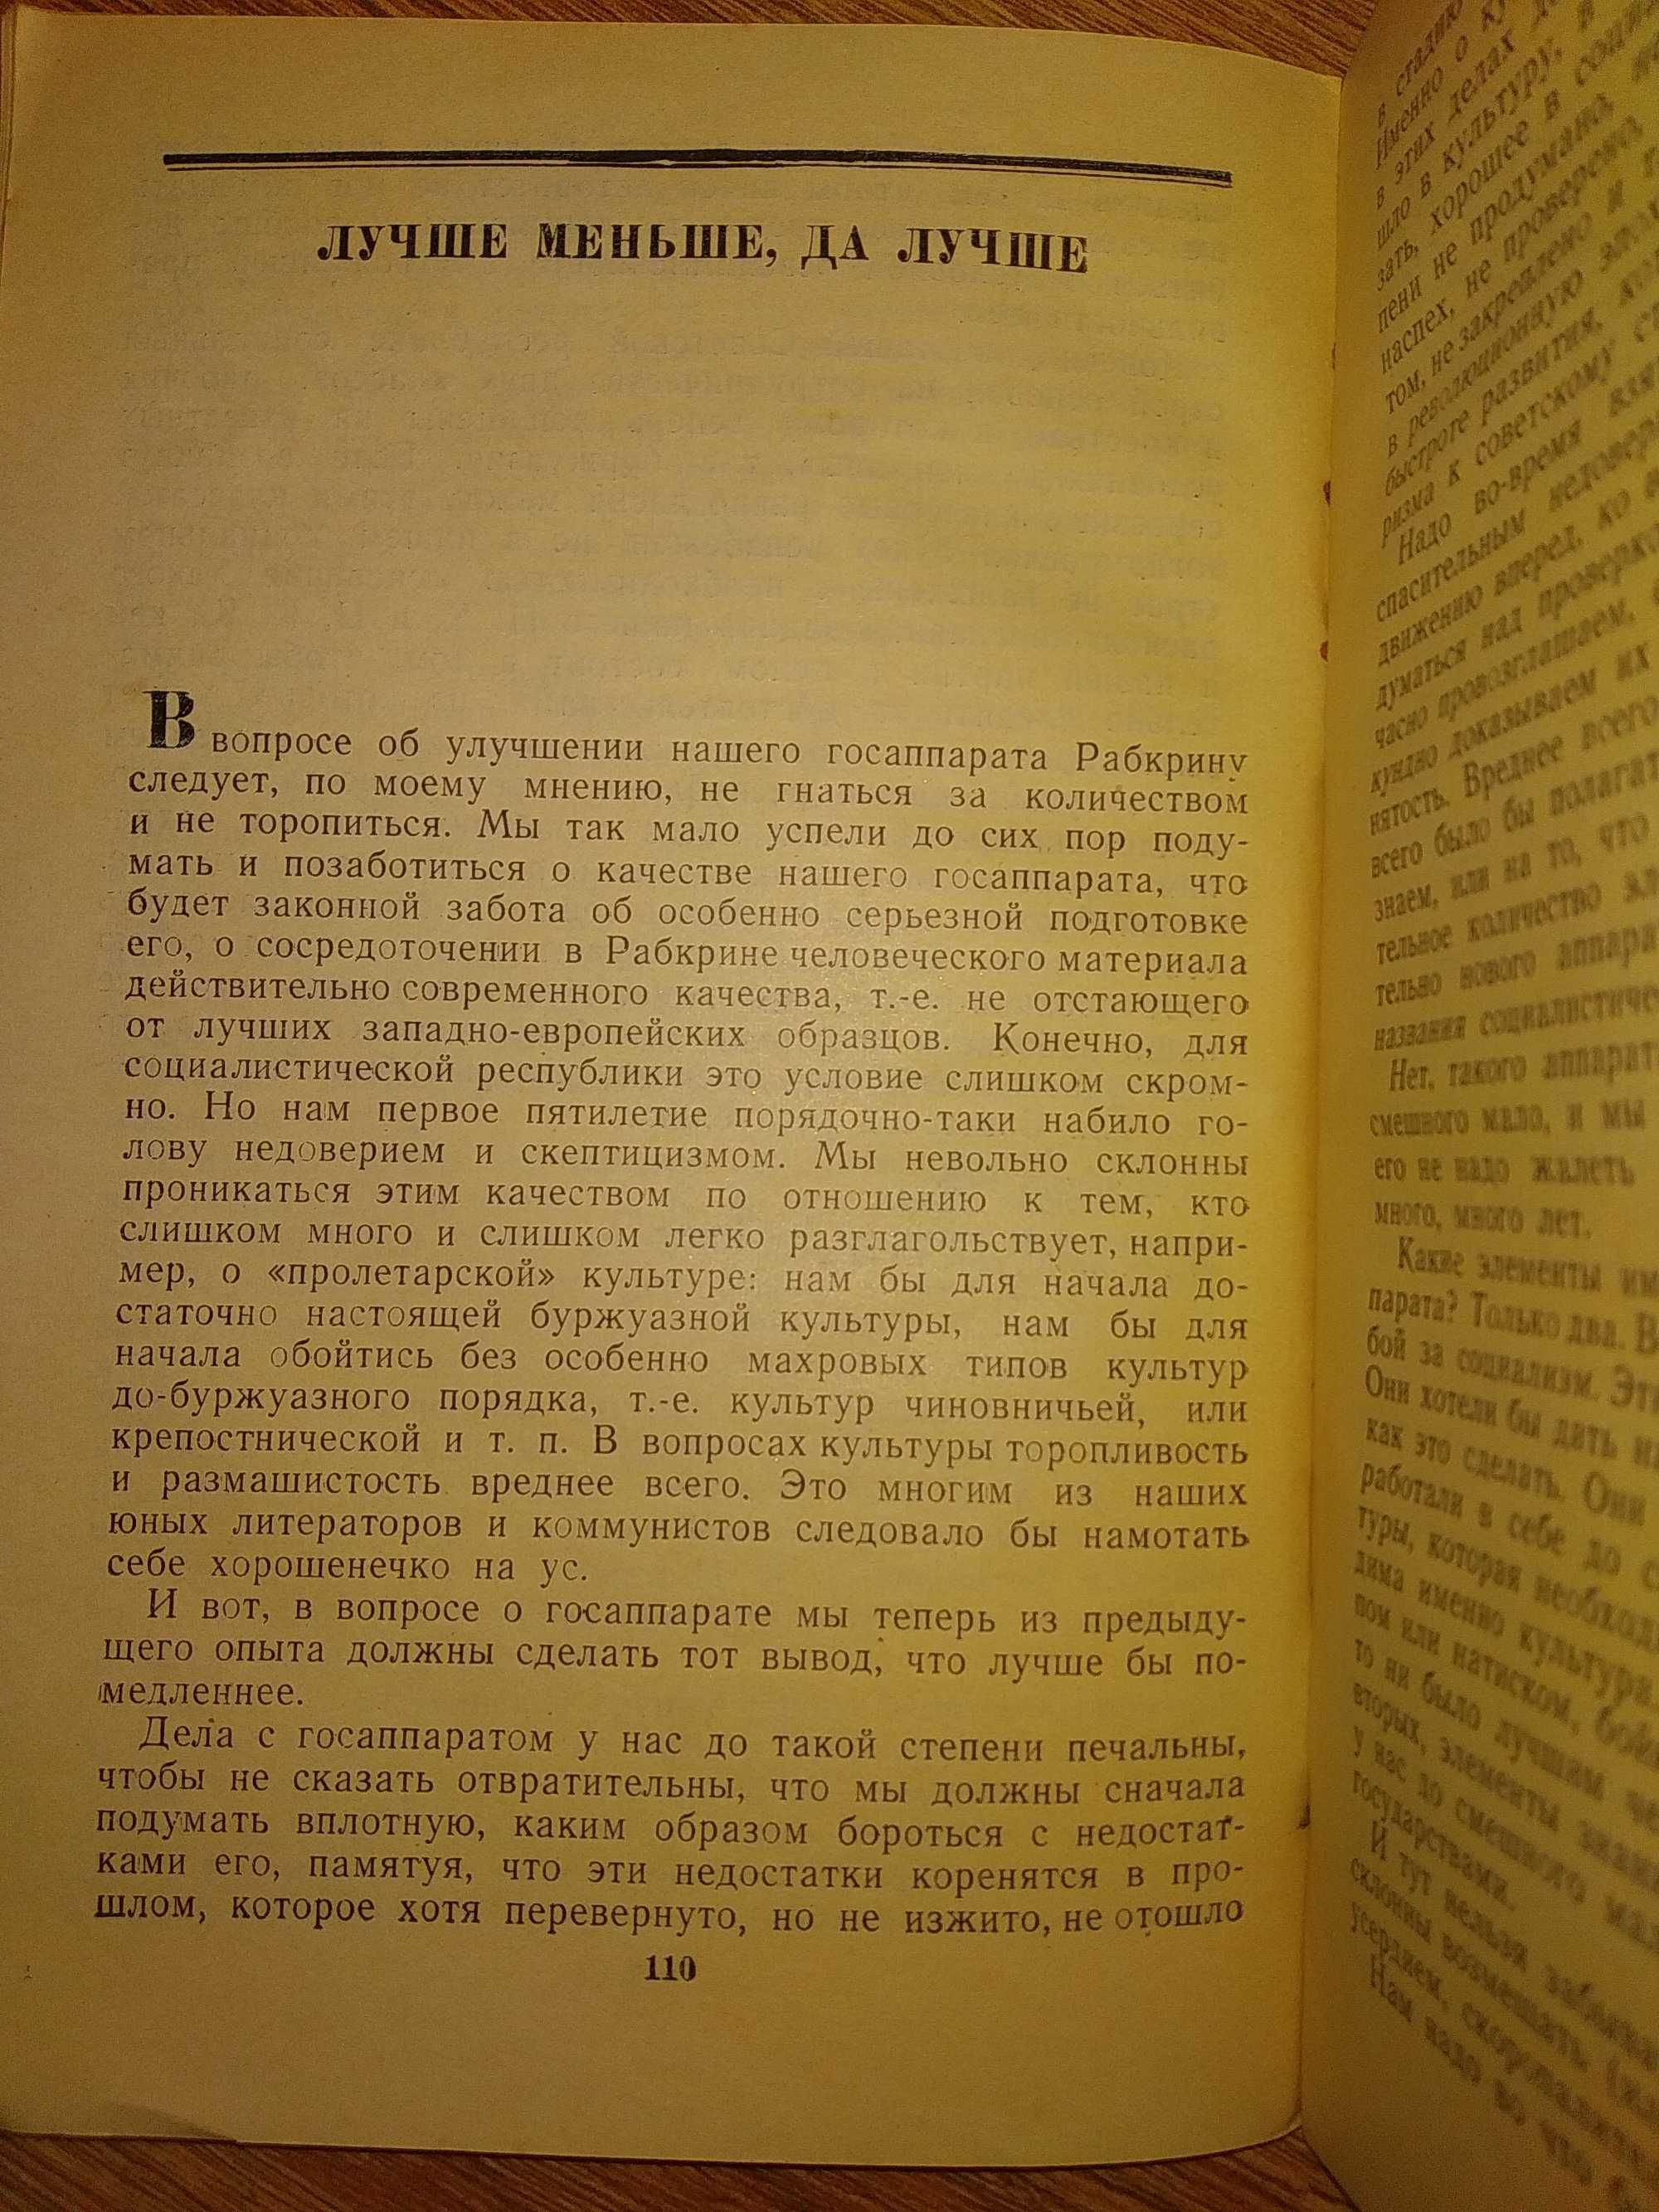 Ленин  В.И.  Статьи и речи 1922-1923 г.г.  Издание Москва 1945 г.